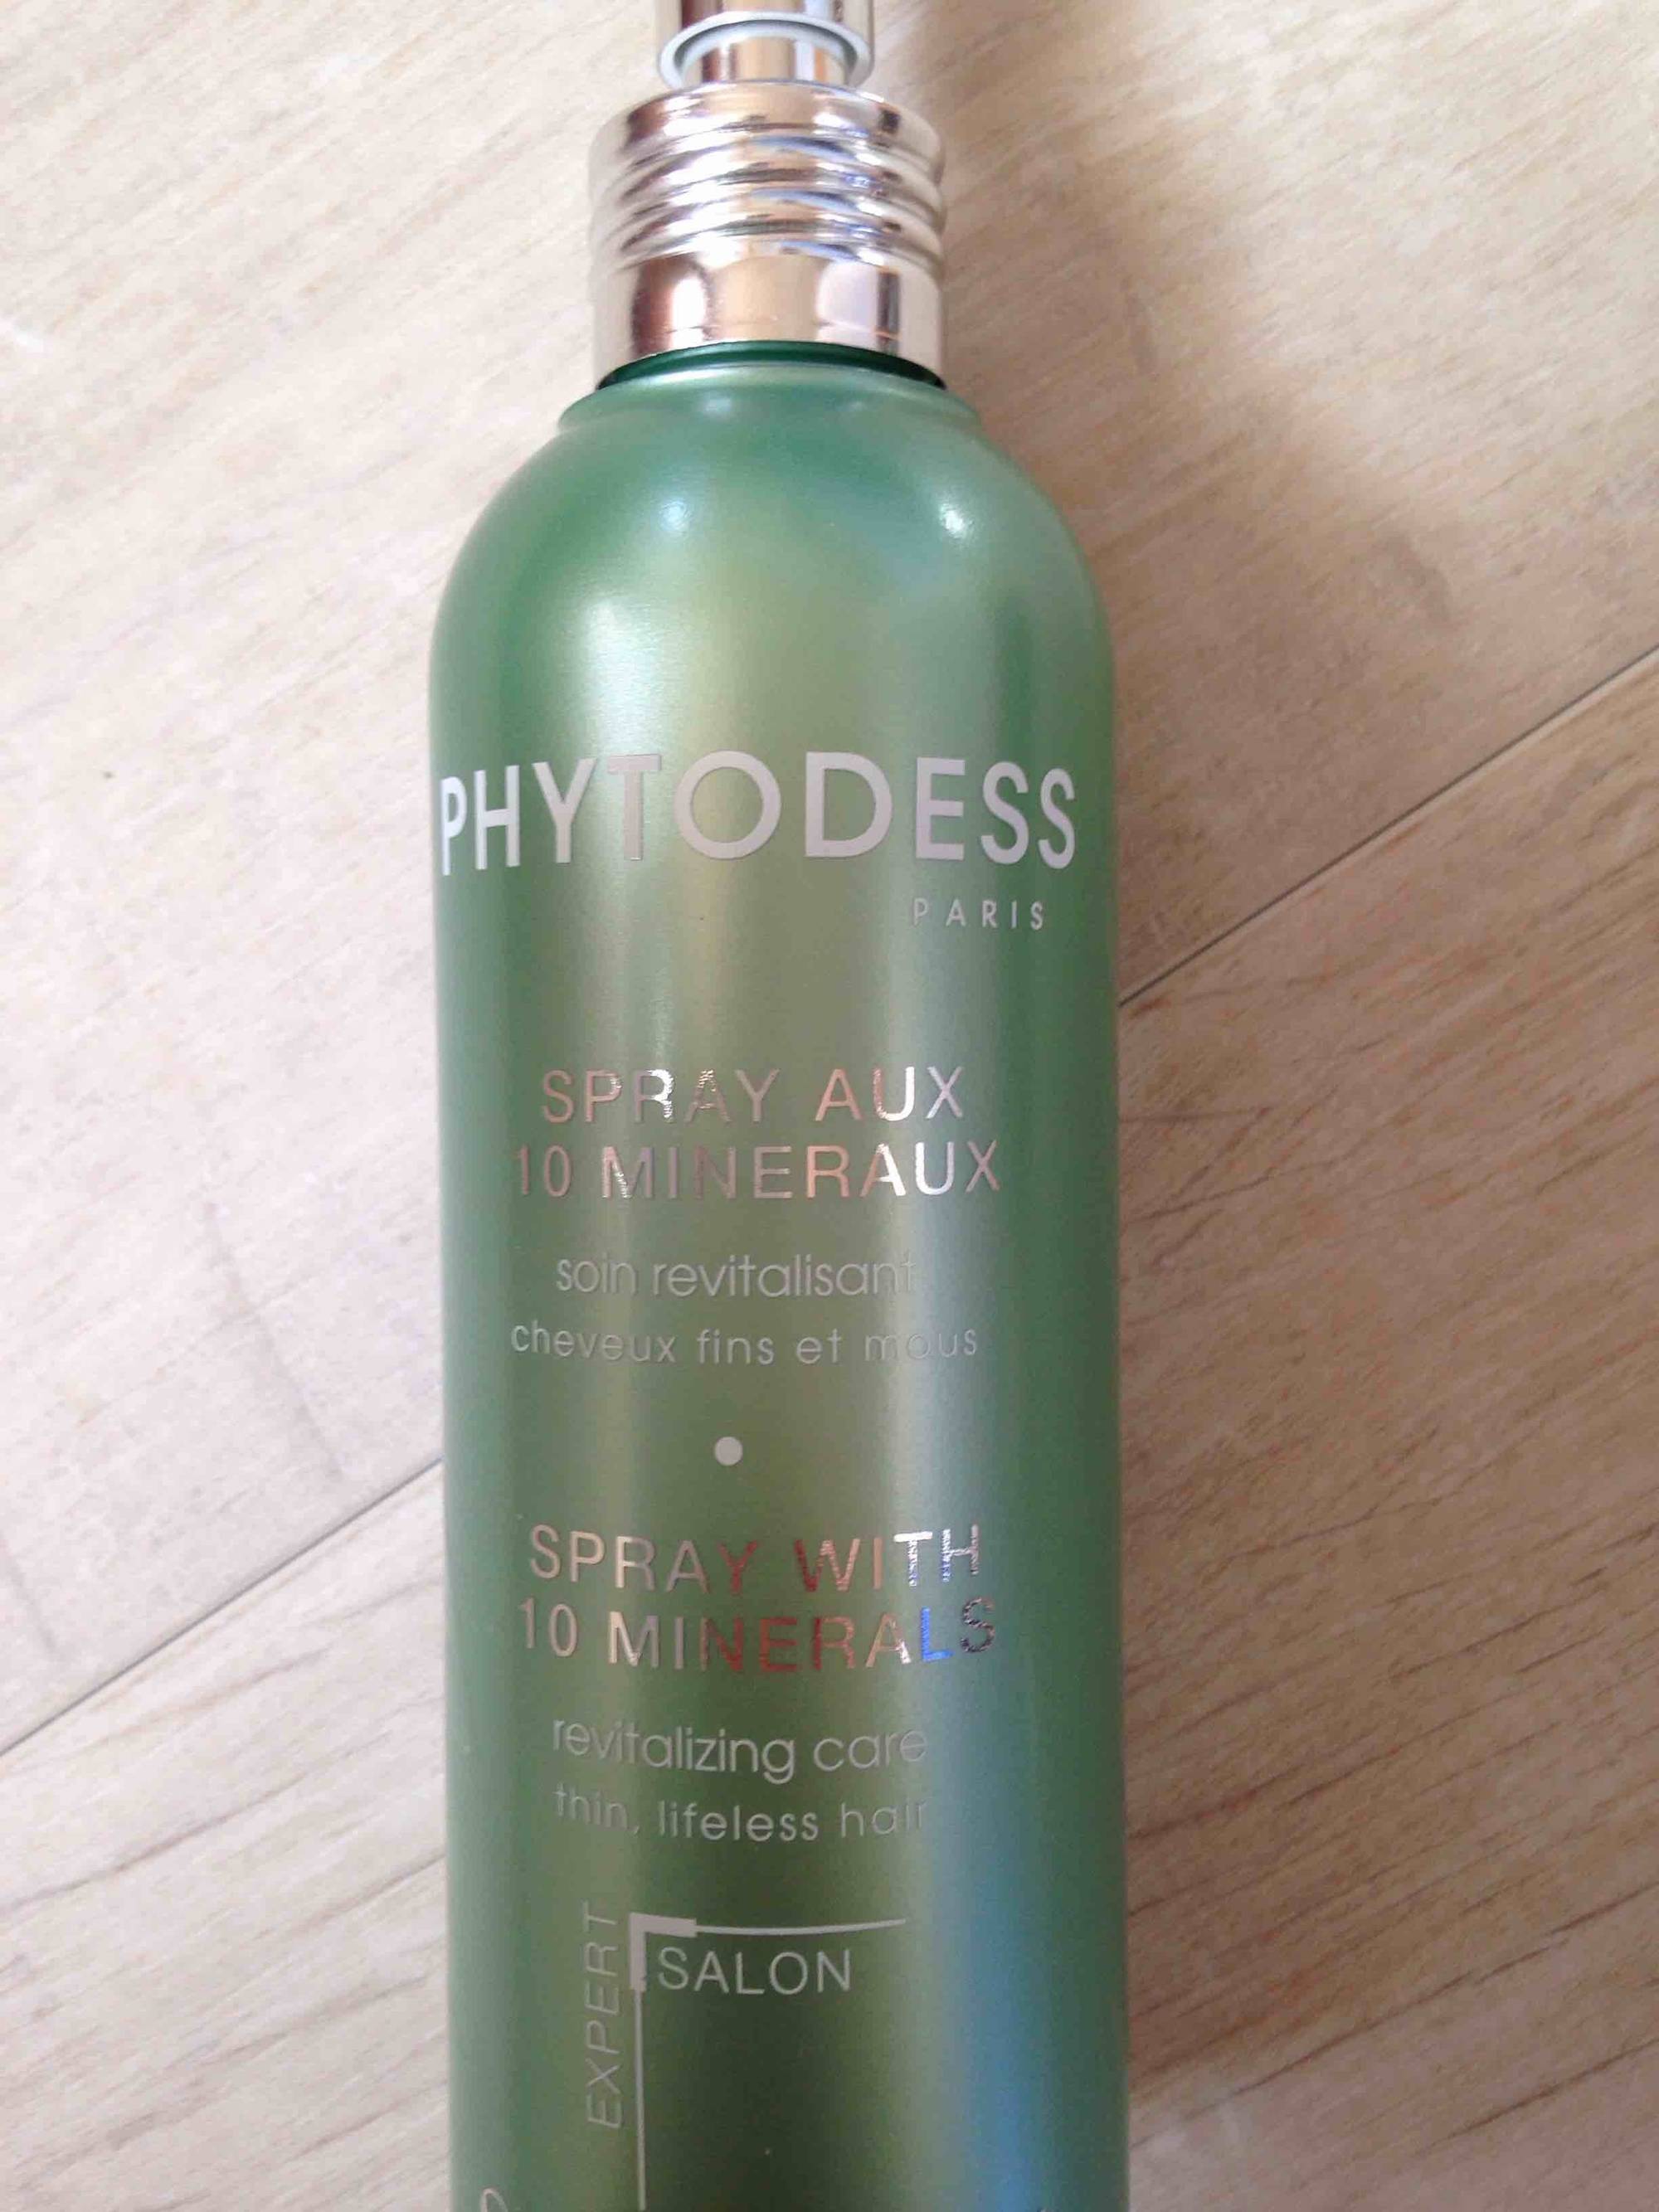 PHYTODESS - Spray aux 10 minéraux - Soin revitalisant cheveux fins et mous